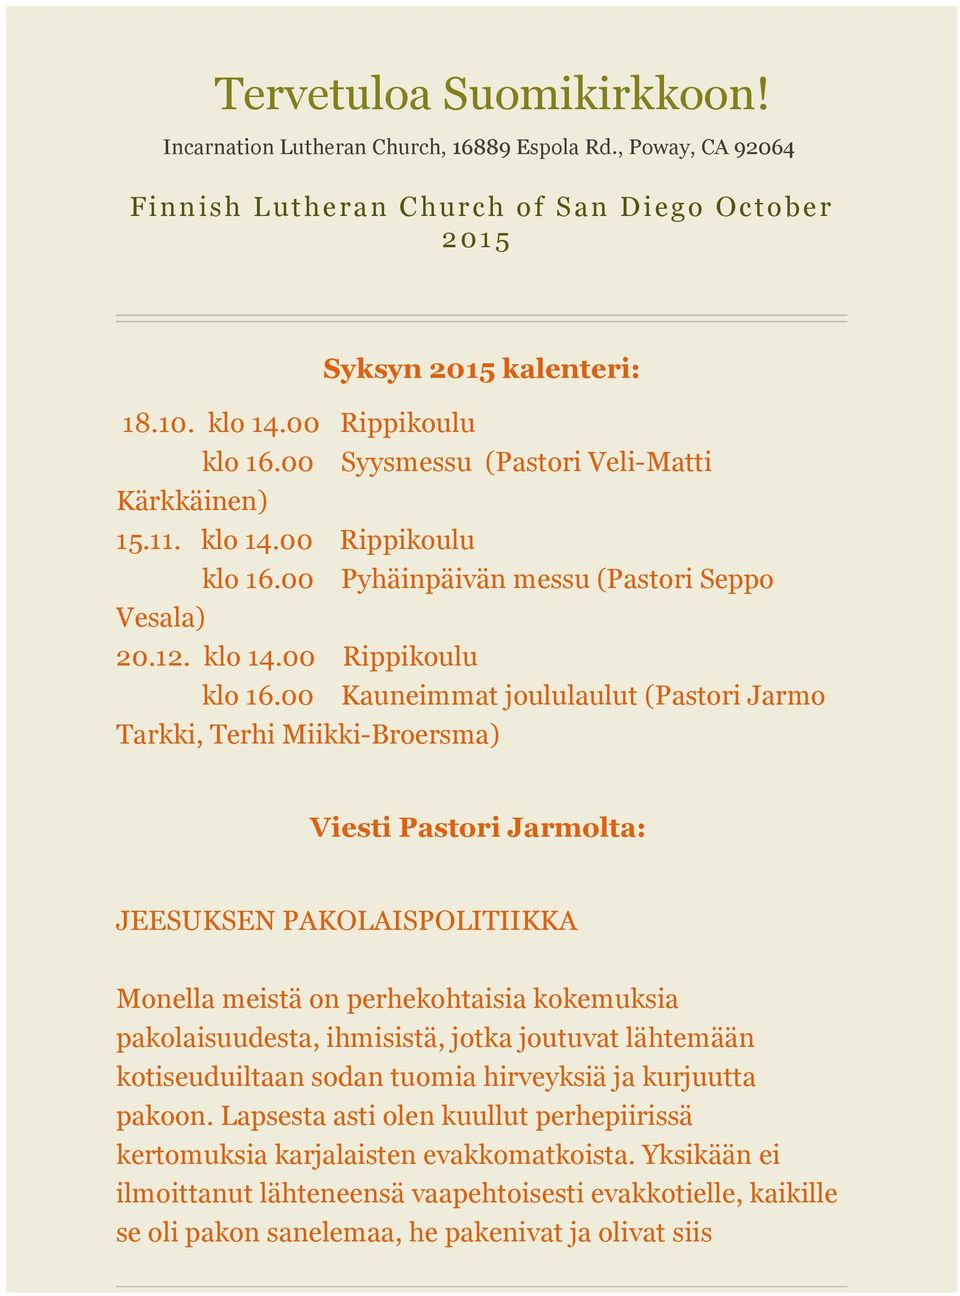 00 Pyhäinpäivän messu (Pastori Seppo Vesala) 20.12. klo 14.00 Rippikoulu klo 16.